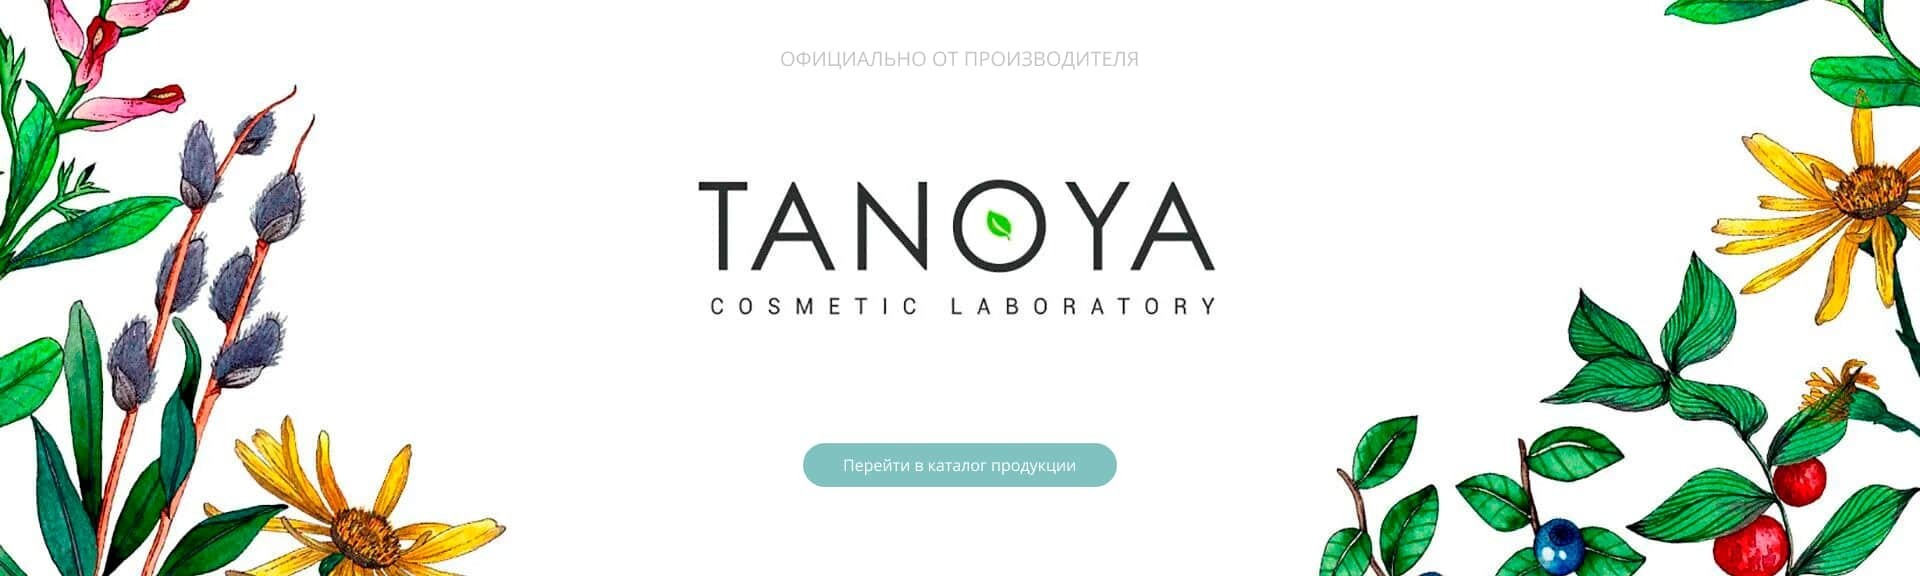 Фото профессиональной косметики от украинского производителя - TANOYA